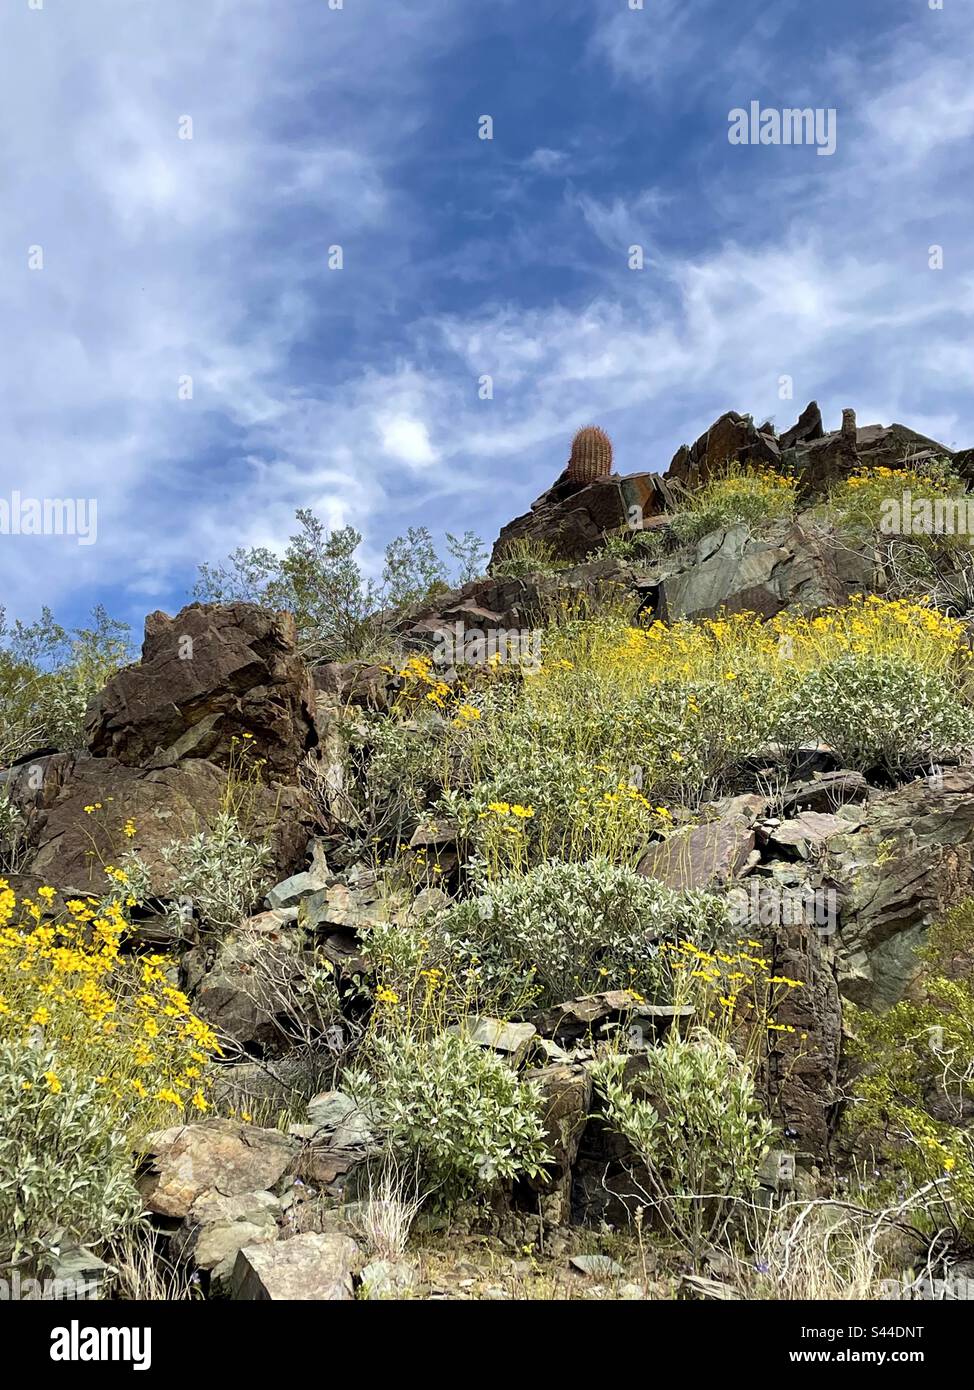 Les montagnes de Phoenix conservent au printemps, les buissons fragiles couvrent des pentes rocheuses, jaune brillant parmi les rochers déchiquetés, les fleurs sauvages, le désert de Sonoran, Arizona Banque D'Images